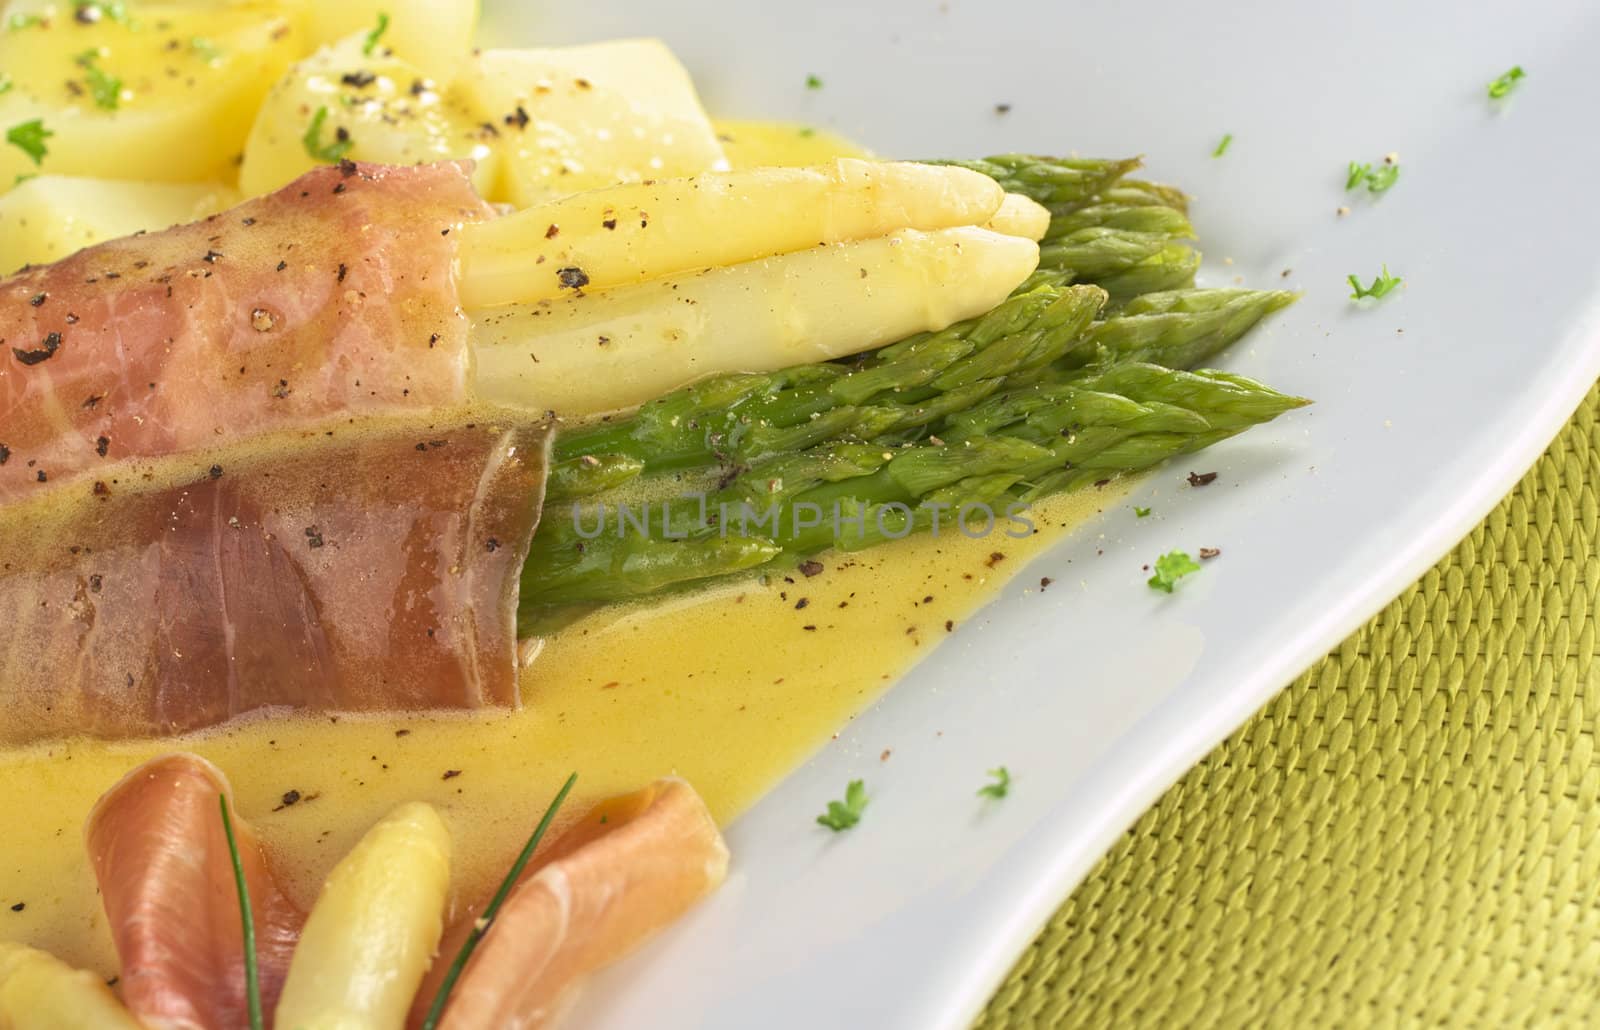 Asparagus with Ham and Hollandaise Sauce by ildi